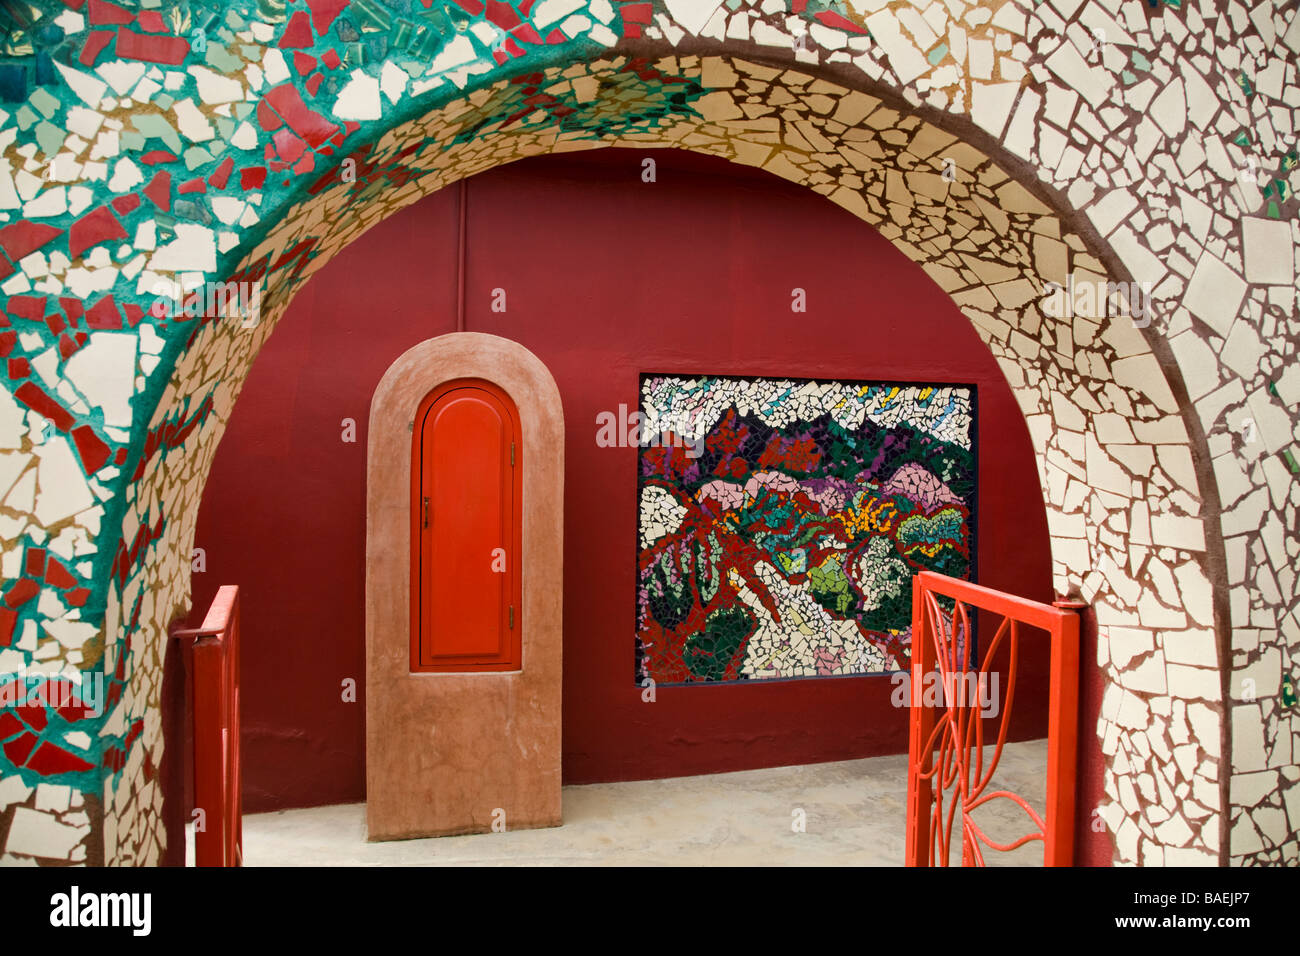 Todos Santos AU MEXIQUE sous forme de mosaïque de carreaux de céramique l'arche à la art gallery entrée et fresque sur mur rouge lumineux Banque D'Images